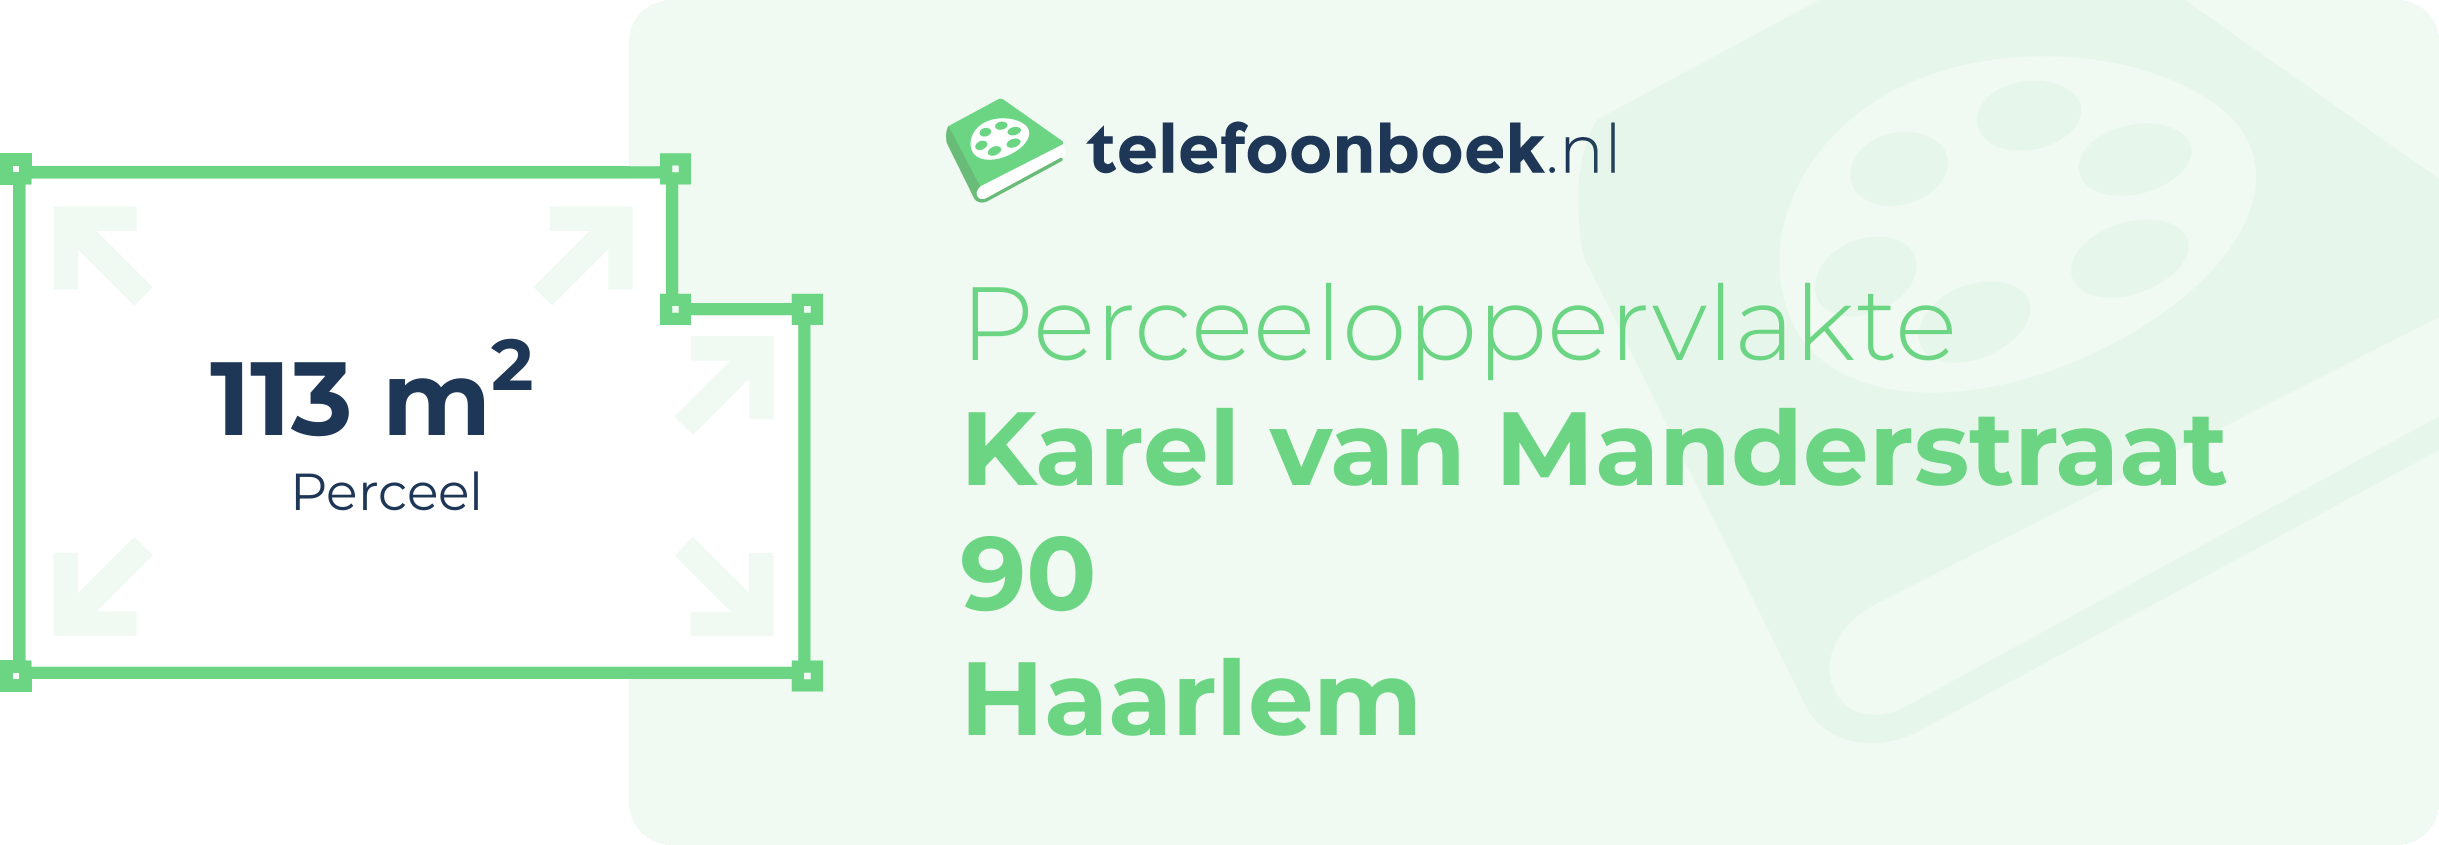 Perceeloppervlakte Karel Van Manderstraat 90 Haarlem